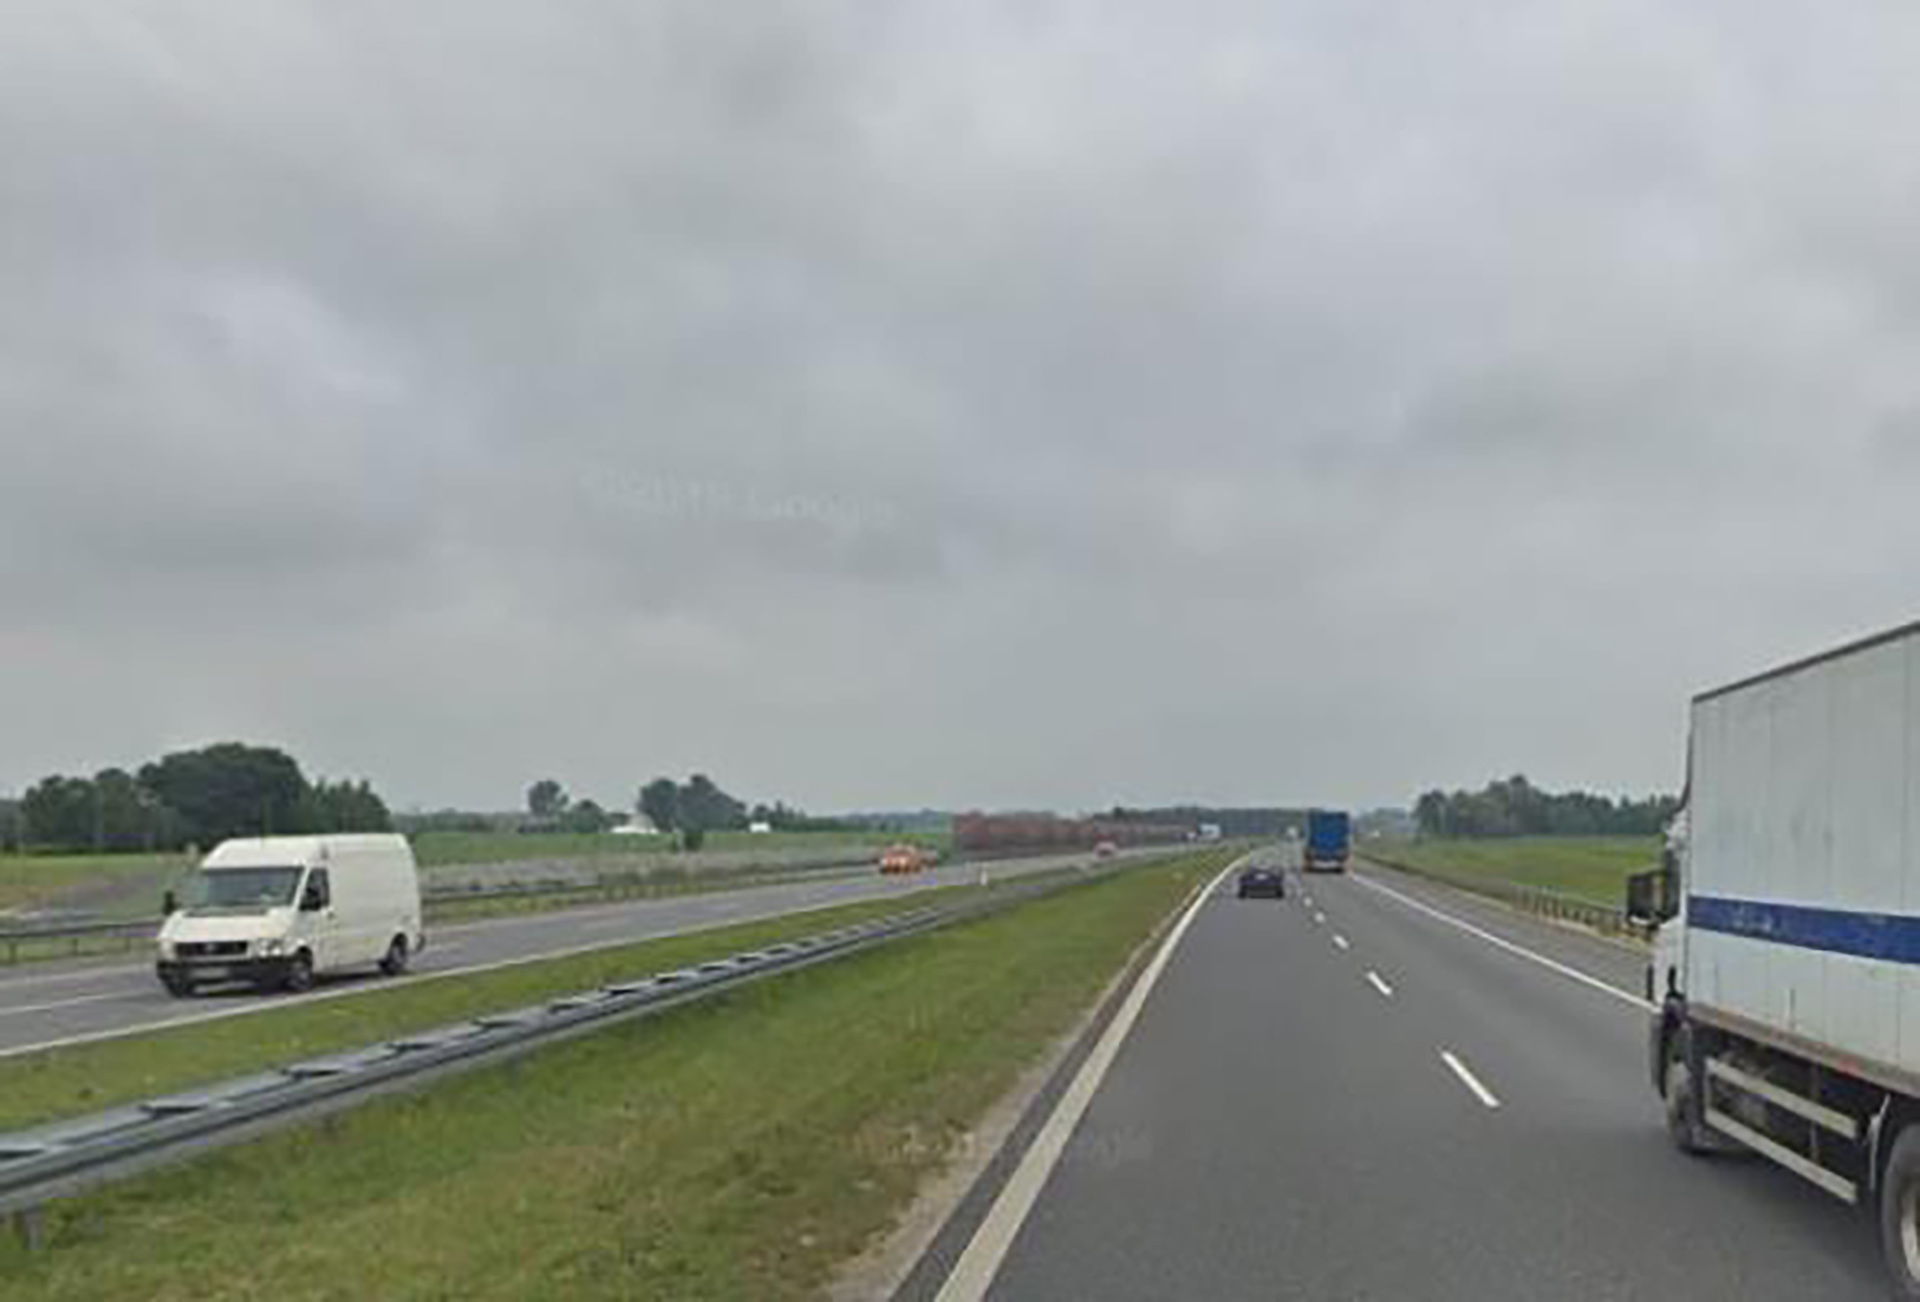 Szykuje się poszerzenie autostrady A1 koło Torunia